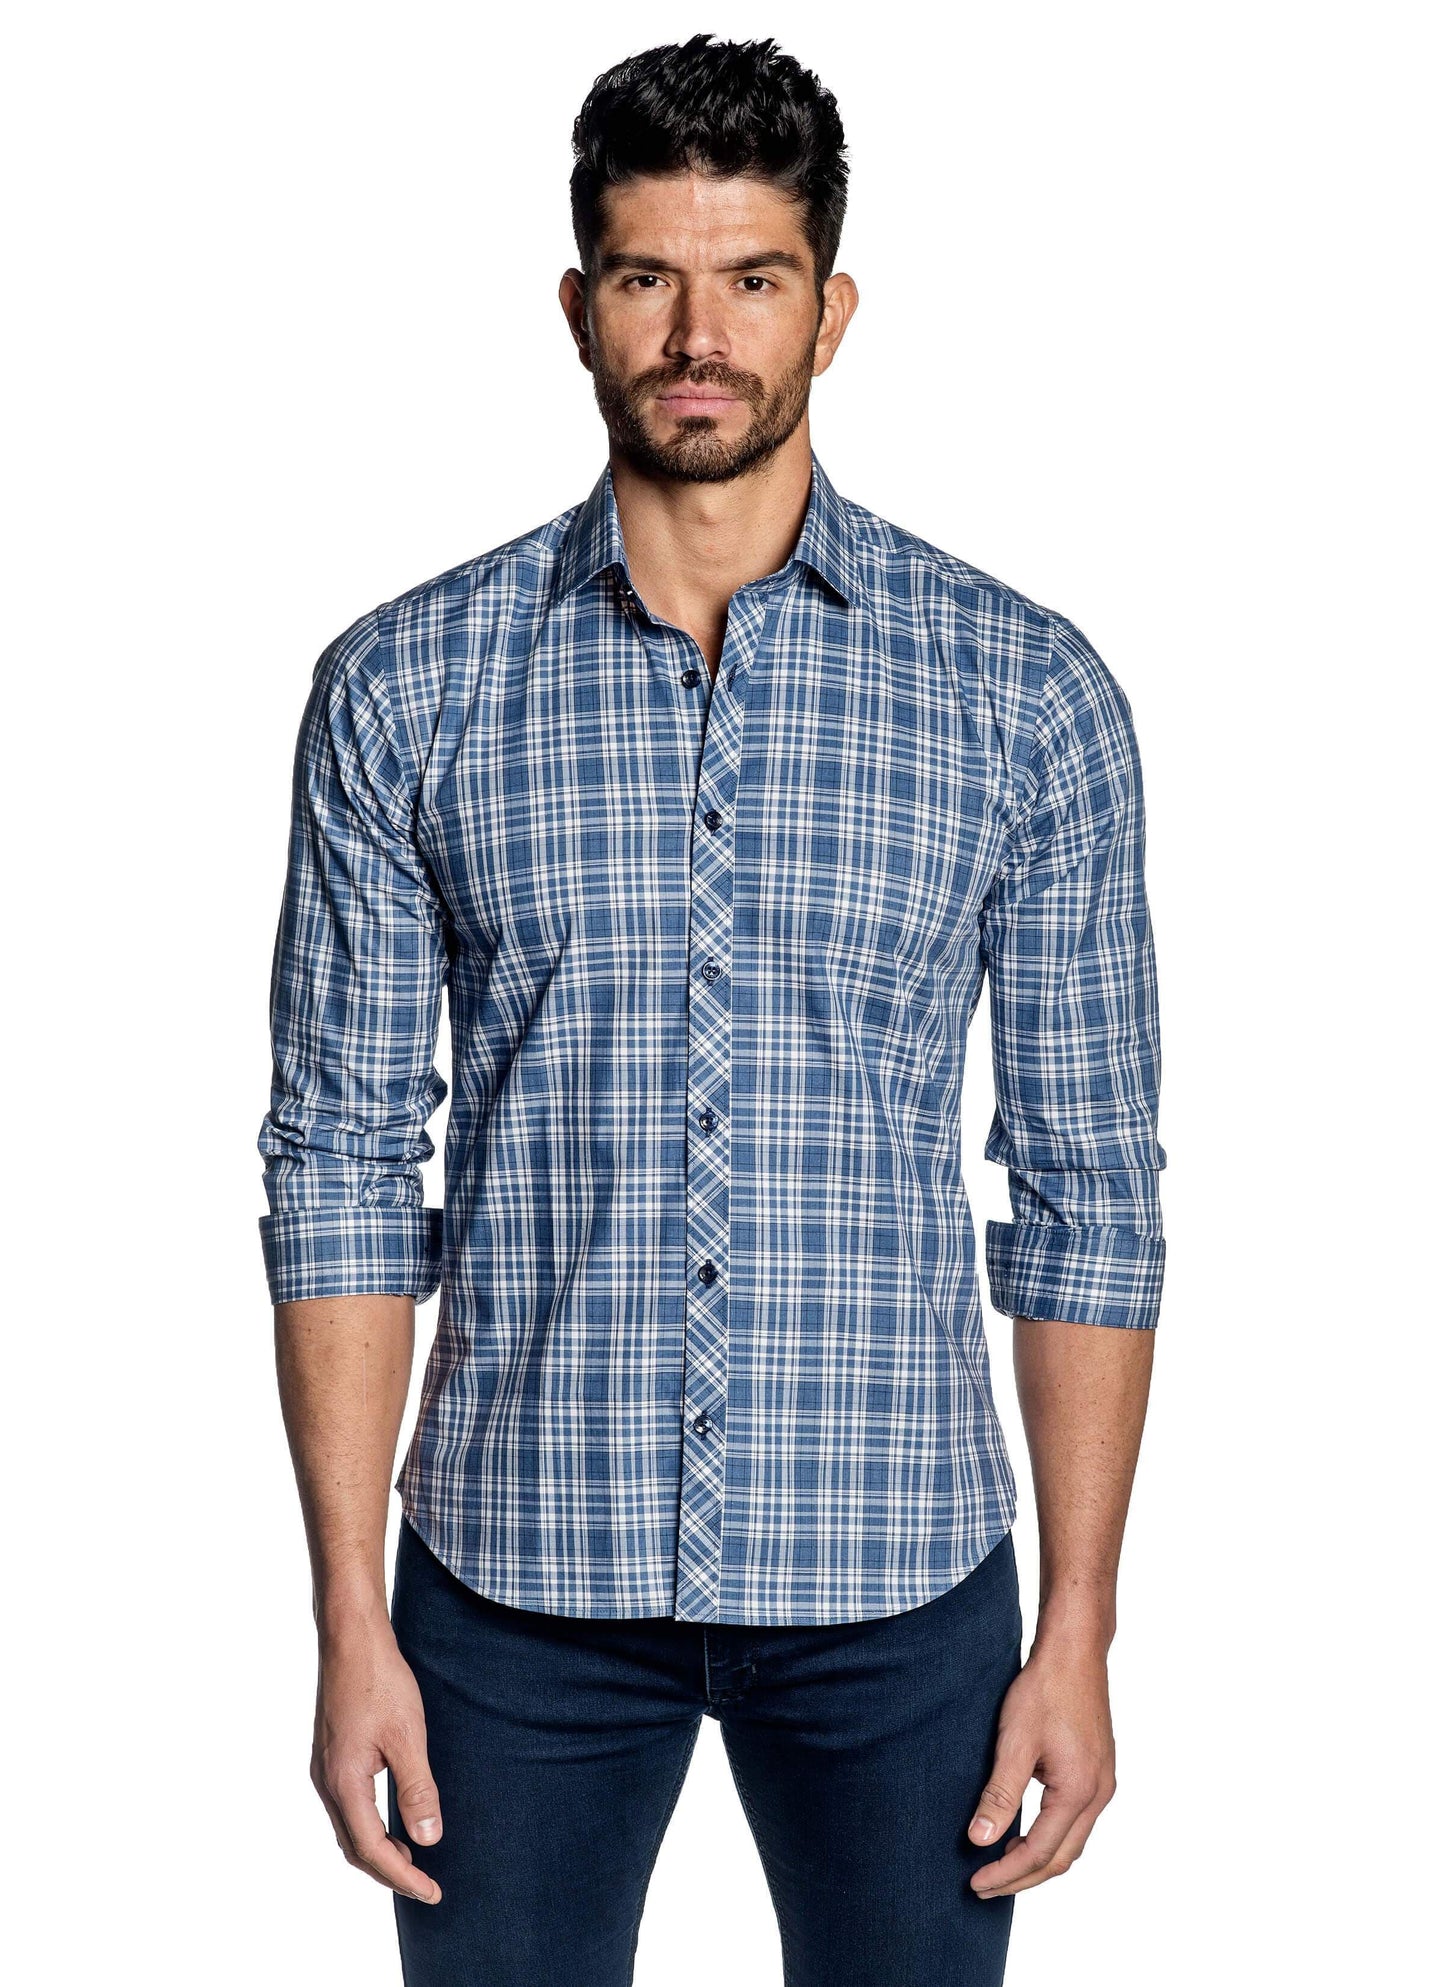 Light Blue Plaid Shirt for Men OT-104 - Front - Jared Lang